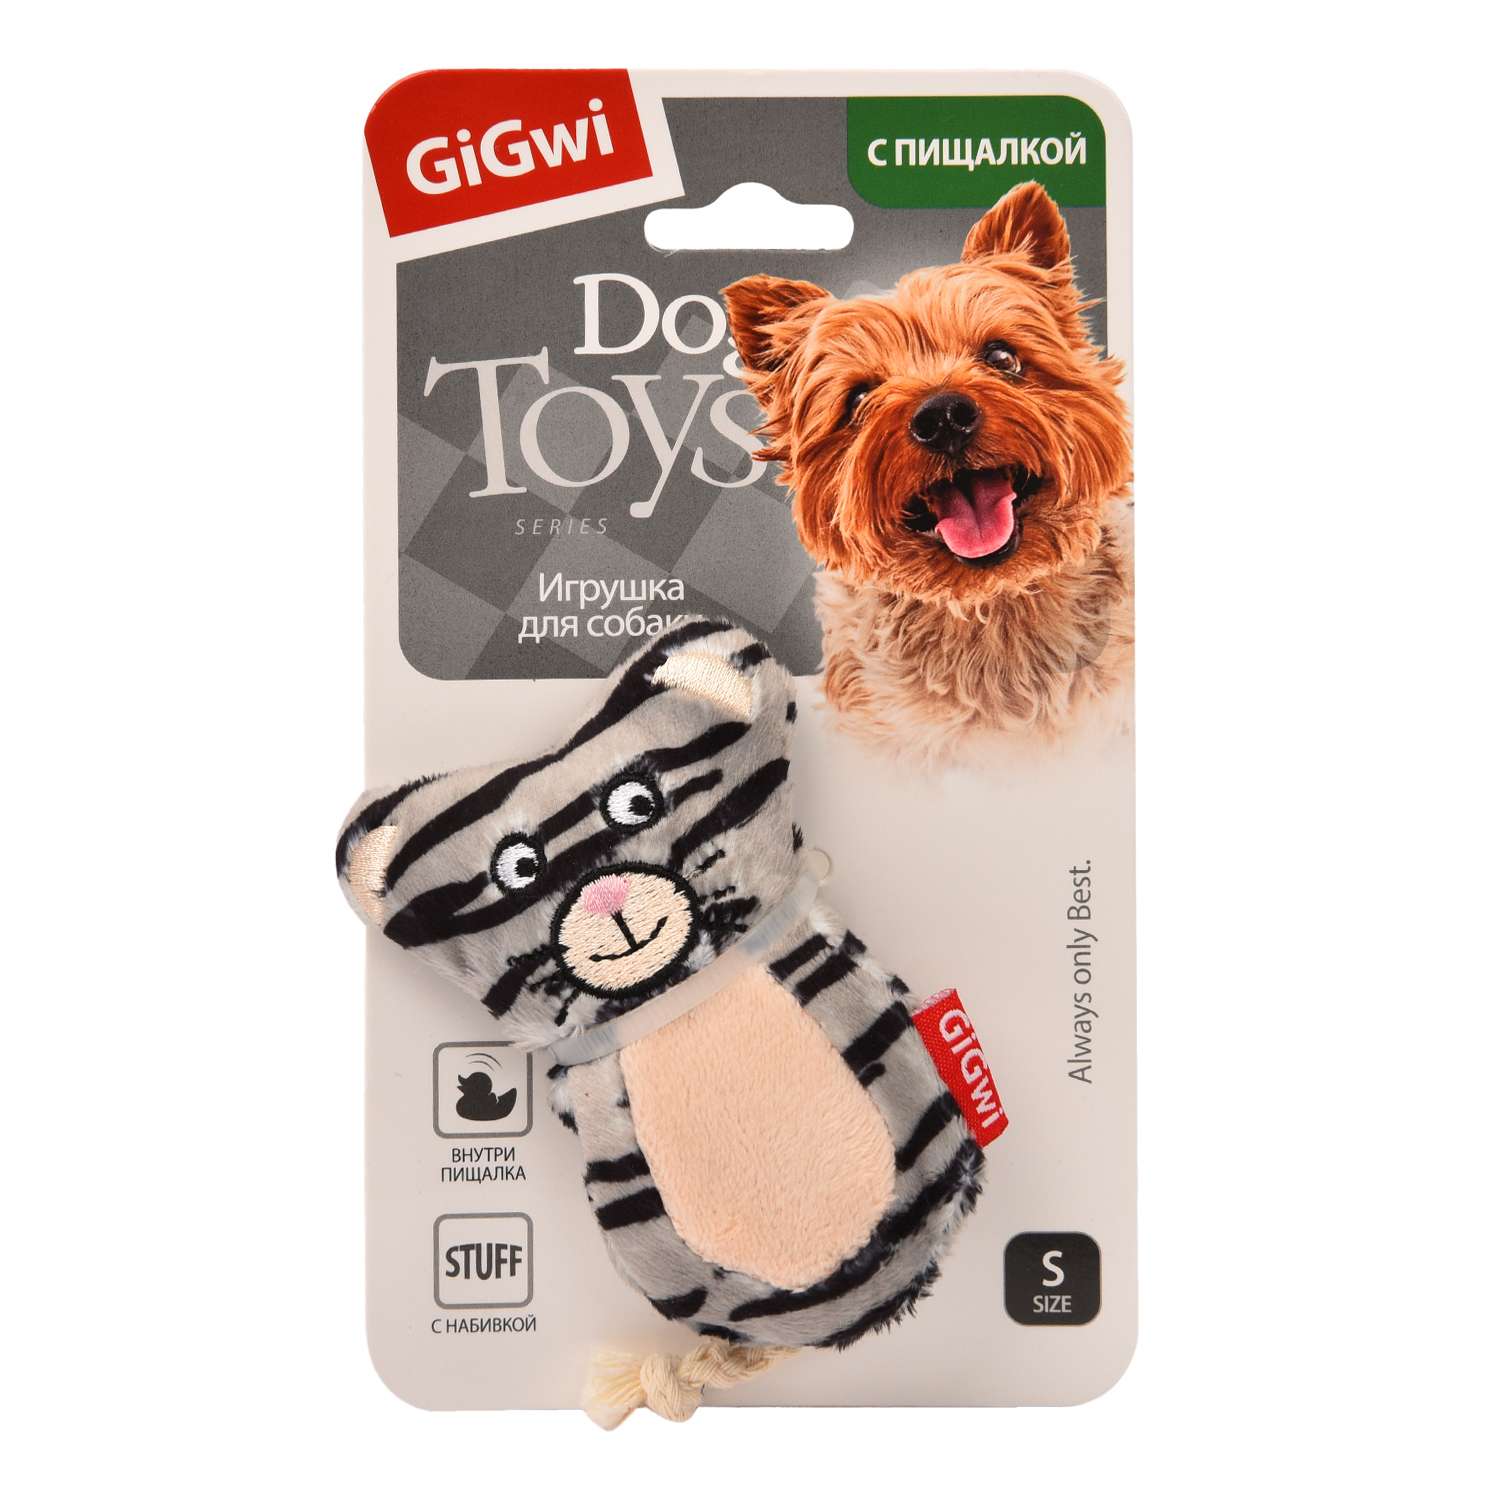 Игрушка для собак GiGwi Кот с 2 пищалками 50105 - фото 2